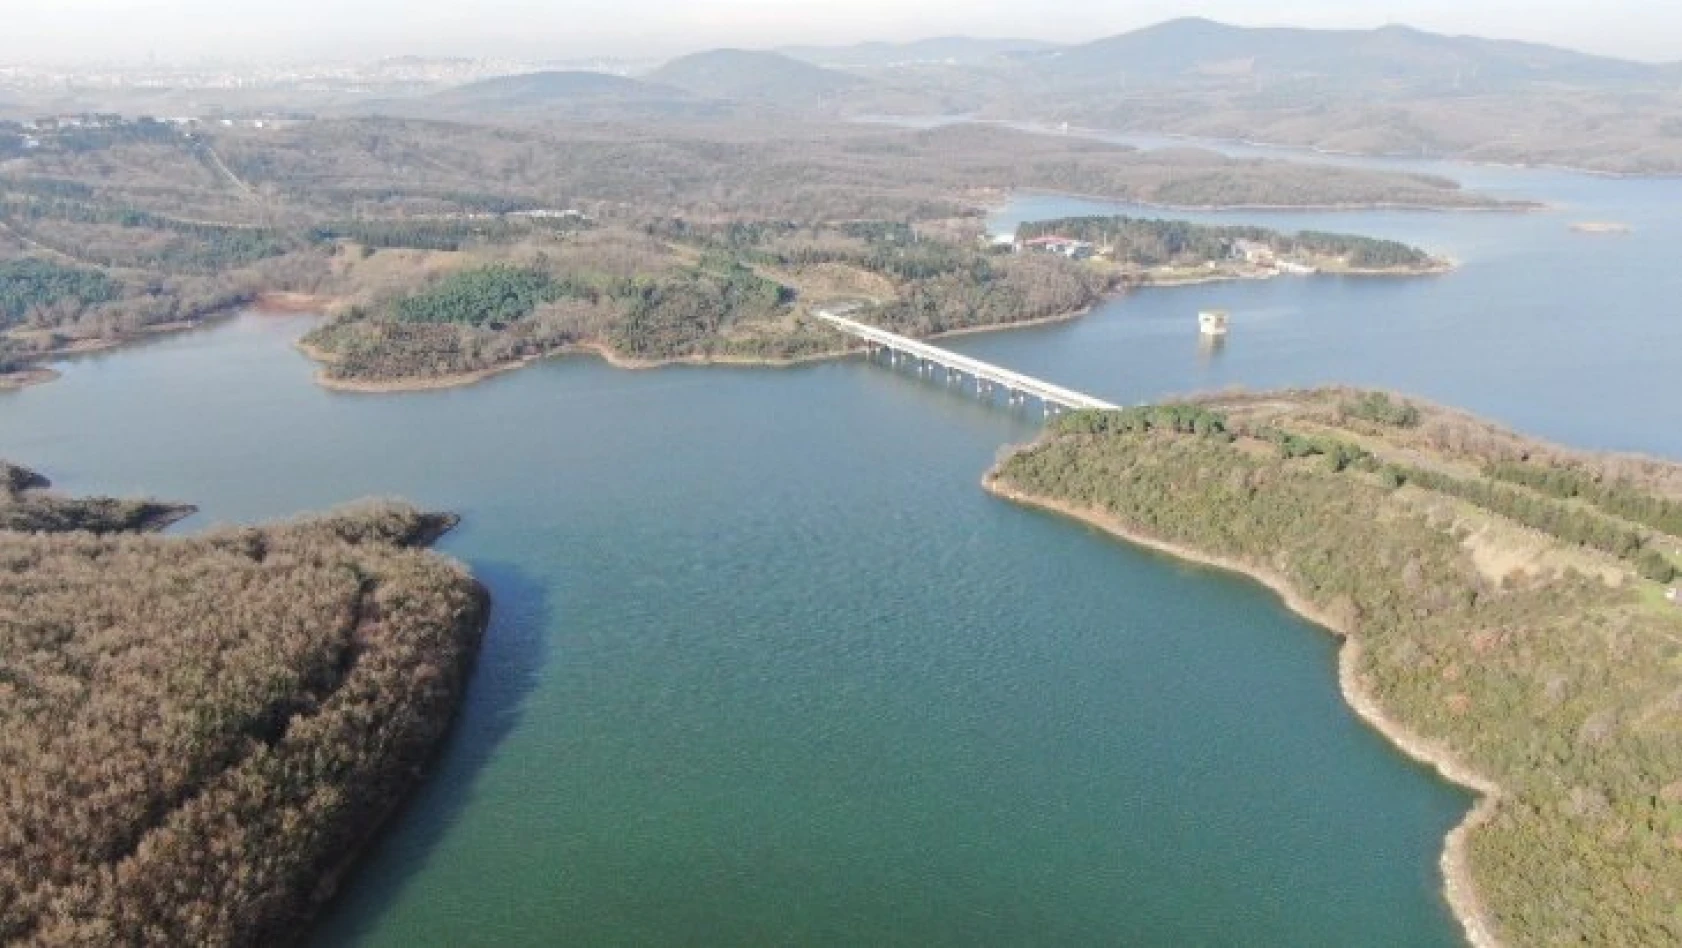  İstanbul'da baraj doluluk oranlarında son durum: Yüzde 48.72   